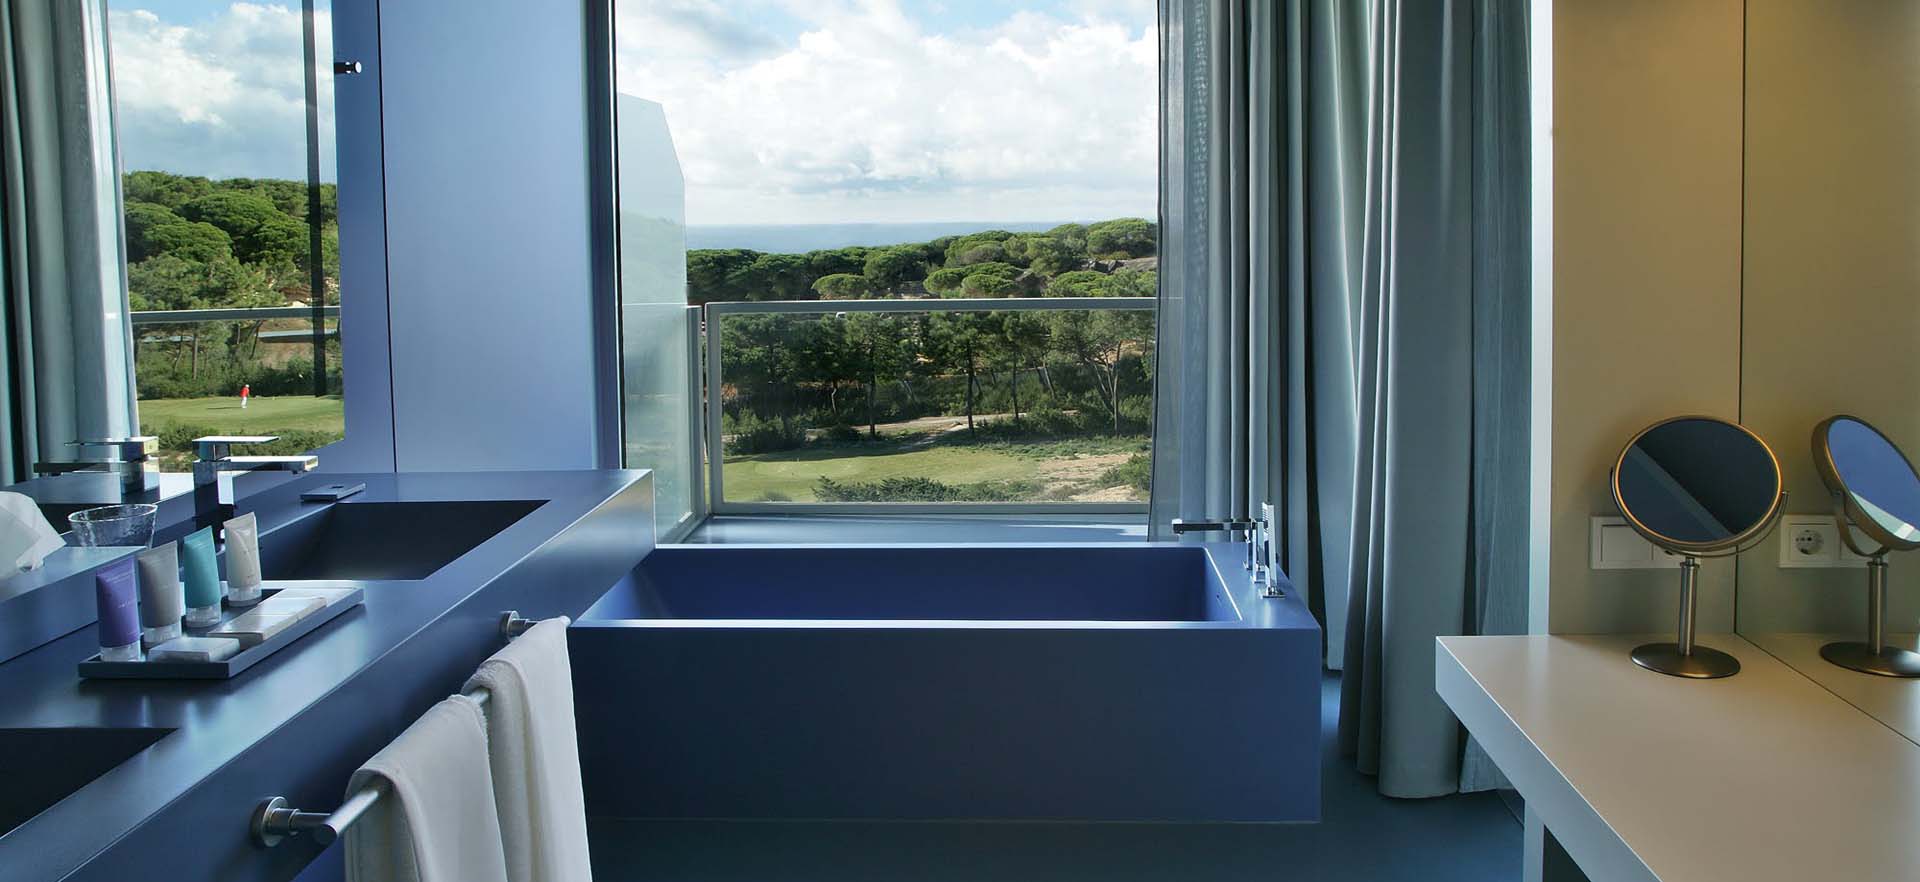 The Oitavos Hotel bathroom Cascais Portugal